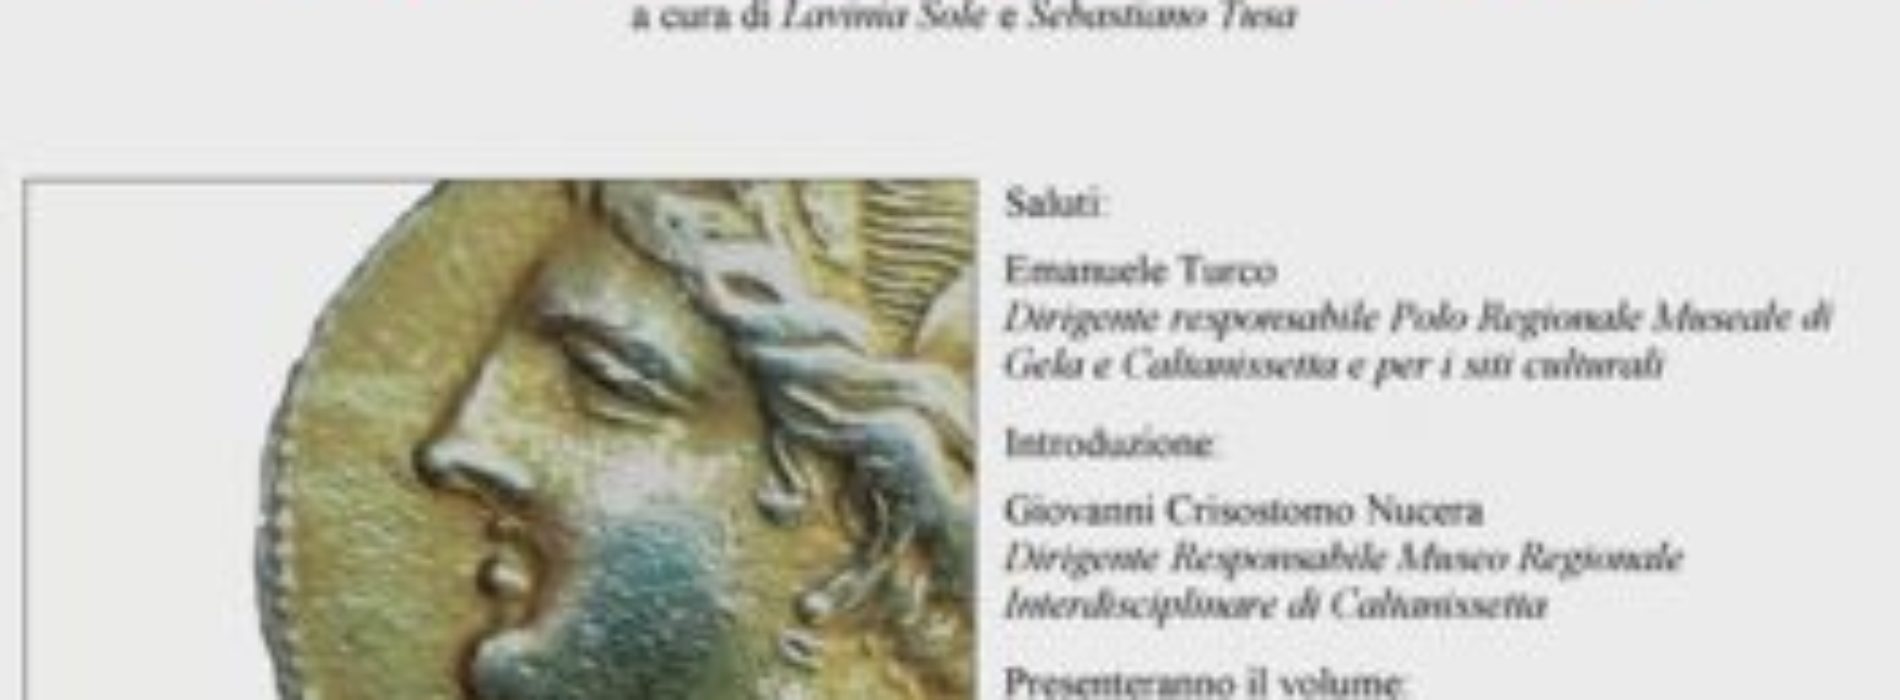 Nella sede del Museo Regionale Interdisciplinare di Caltanissetta presentazione del volume “Nomismata. Studi di numismatica antica”